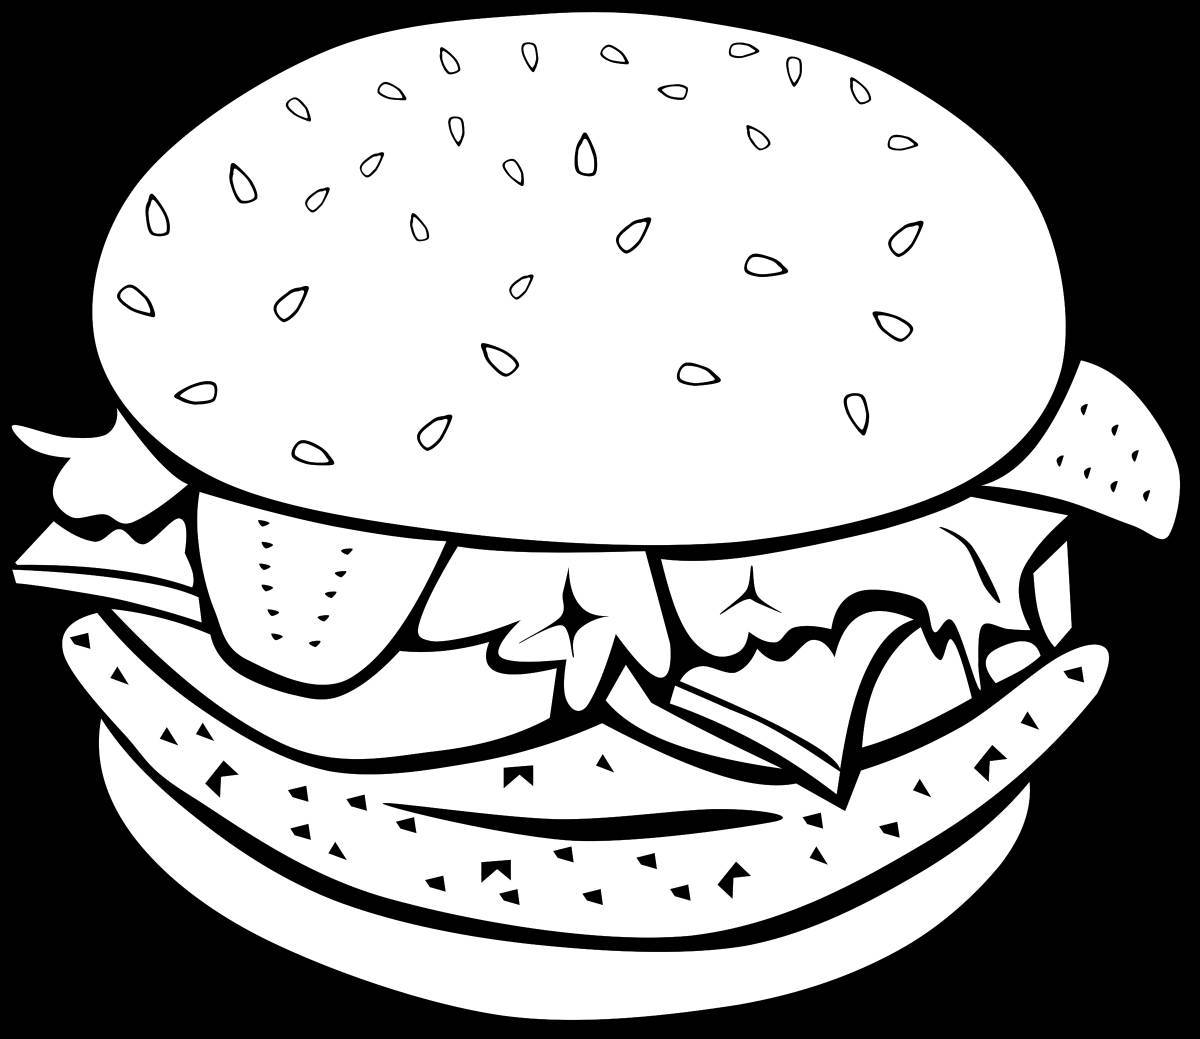 Распечатка гамбургера